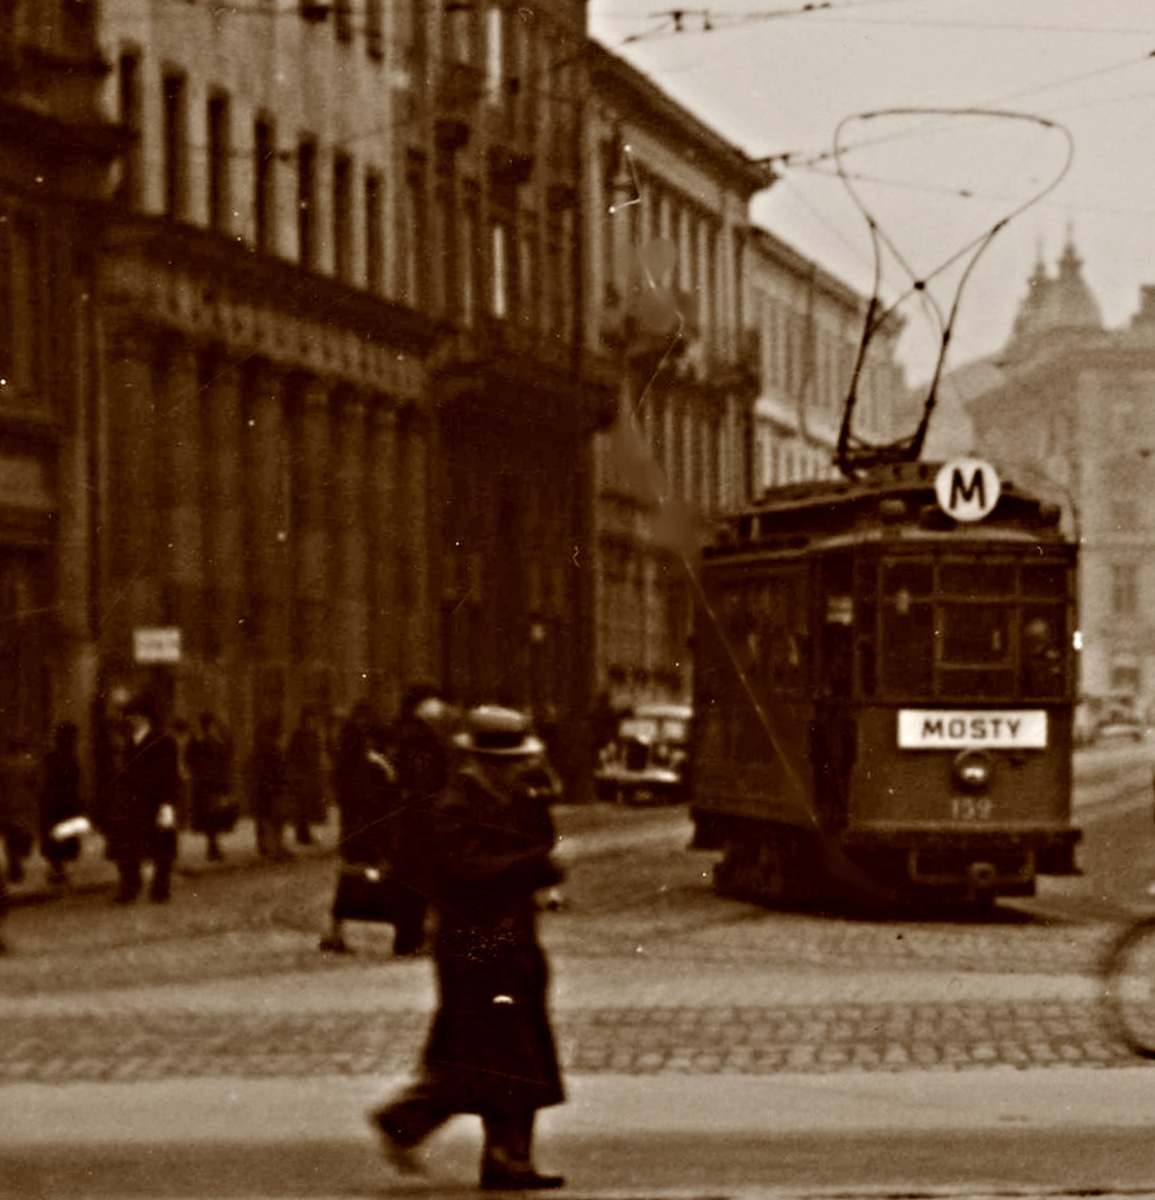 152
Skręt z Królewskiej w Krakowskie przedmieście.
152: produkcja 1906, kasacja 1950.

Zdjęcie jest własnością NAC.
Wszelkie prawa zastrzeżone.

Słowa kluczowe: WagonA 152 M KrólewskaKrakowskiePrzedmieście 1937